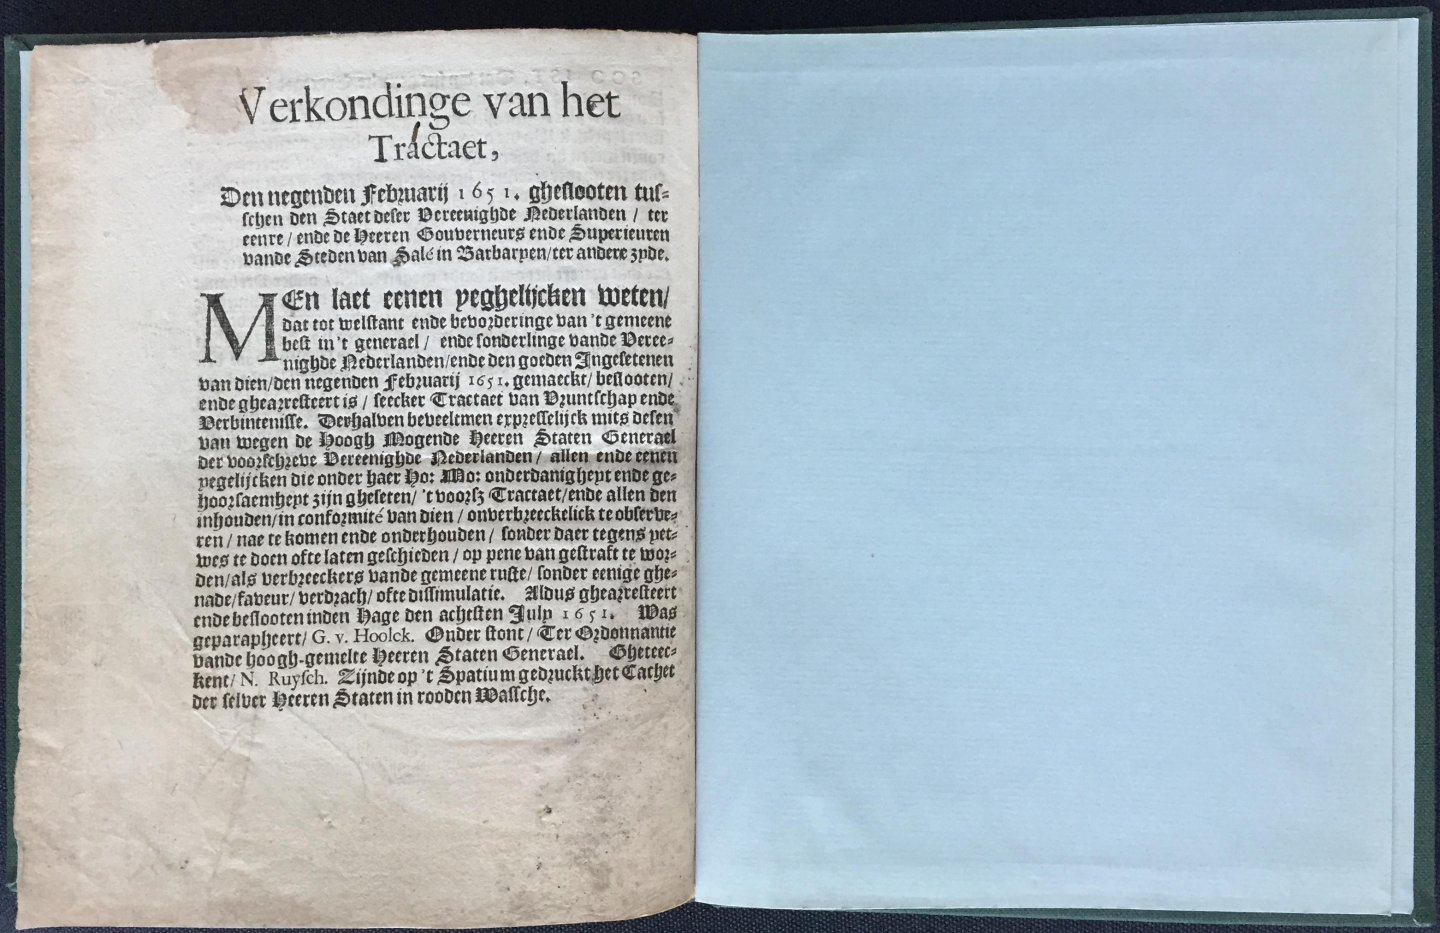 Staten Generaal - Tractaet van vruntschap ende verbintenisse .... 9 februarij 1651 ...Geunieerde Nederlanden ... Salé in Barbarie....